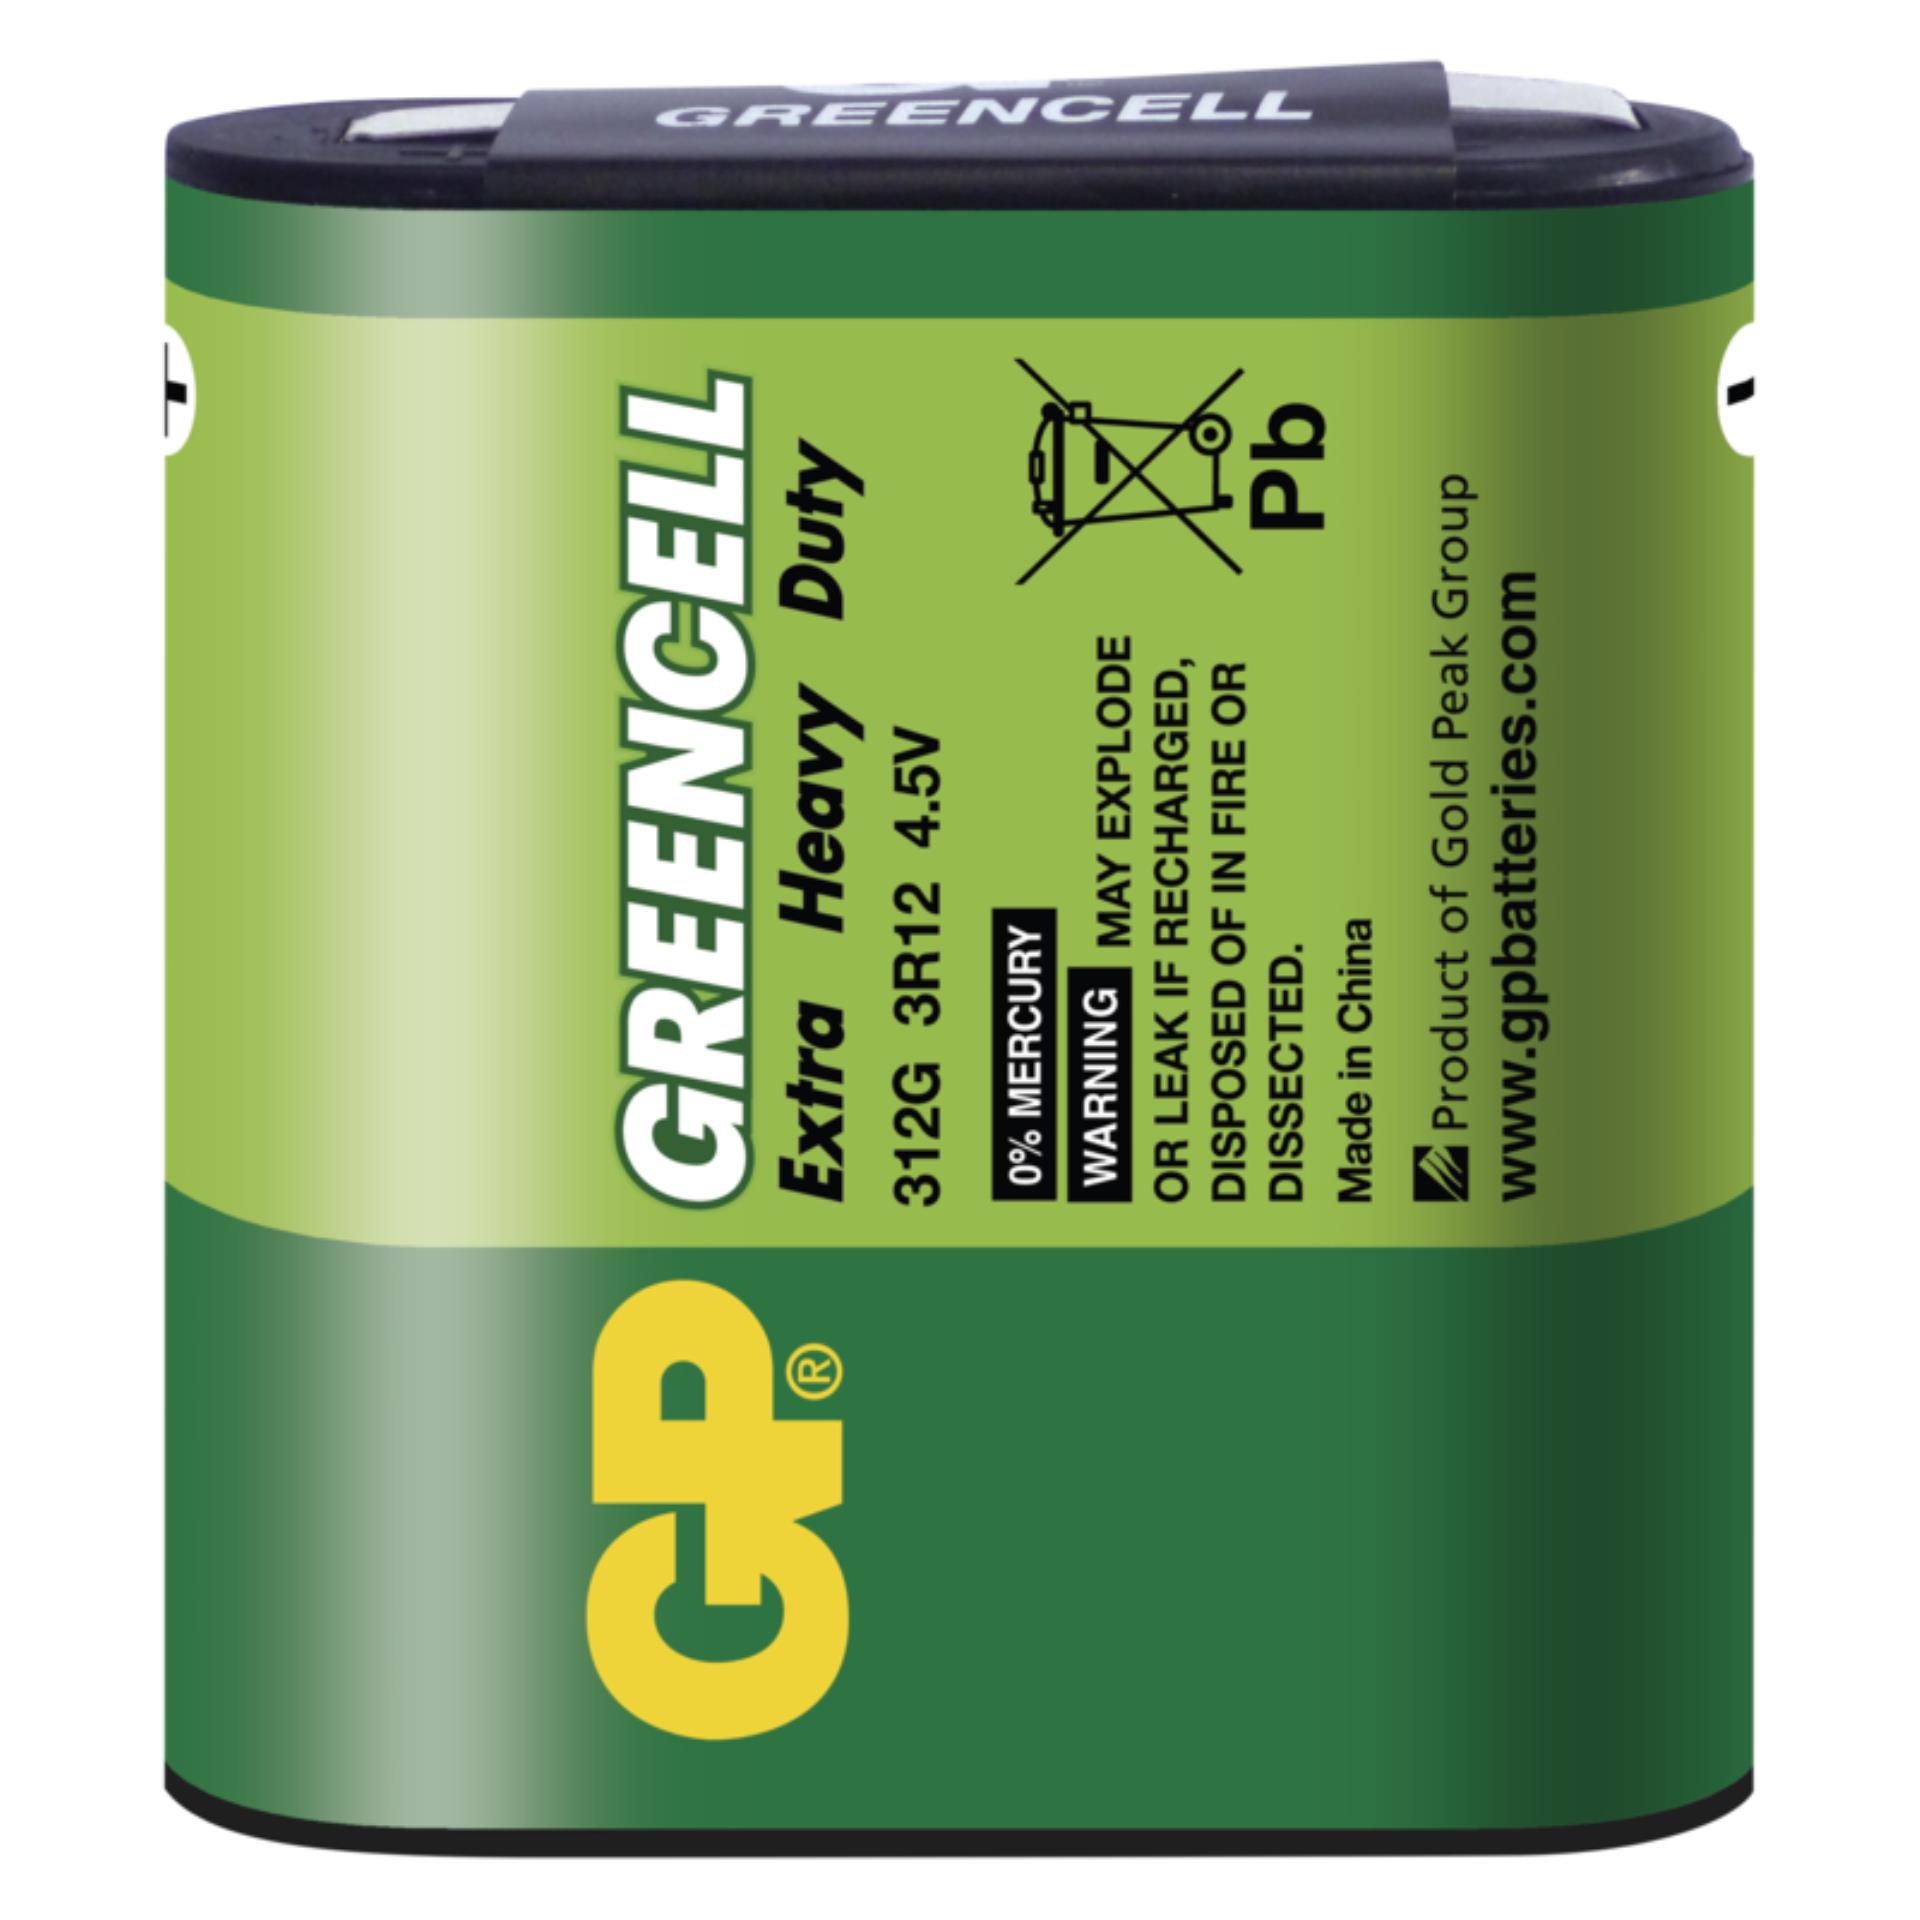 Baterie GP Greencell 4,5V (plochá baterie), 1 ks